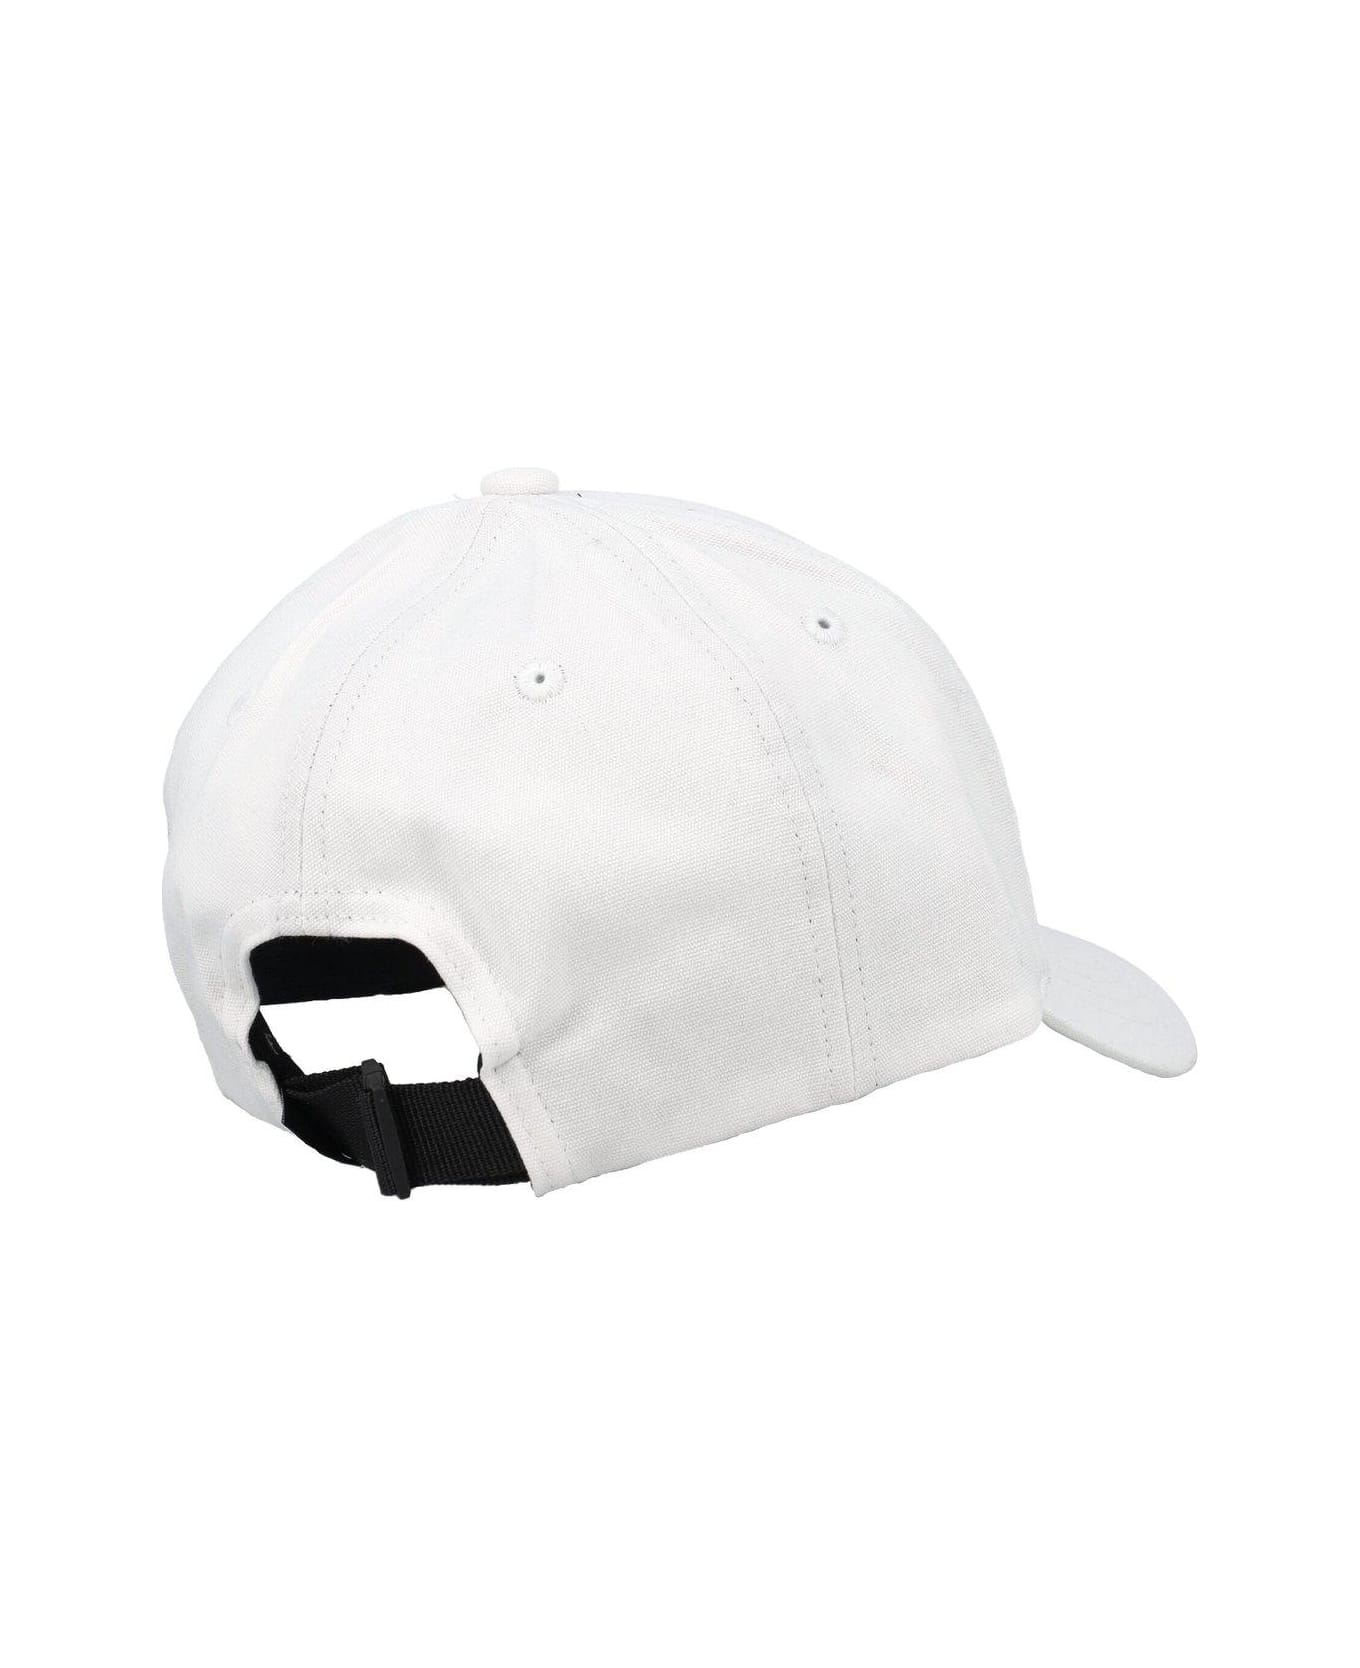 Stone Island Baseball Cap - White 帽子